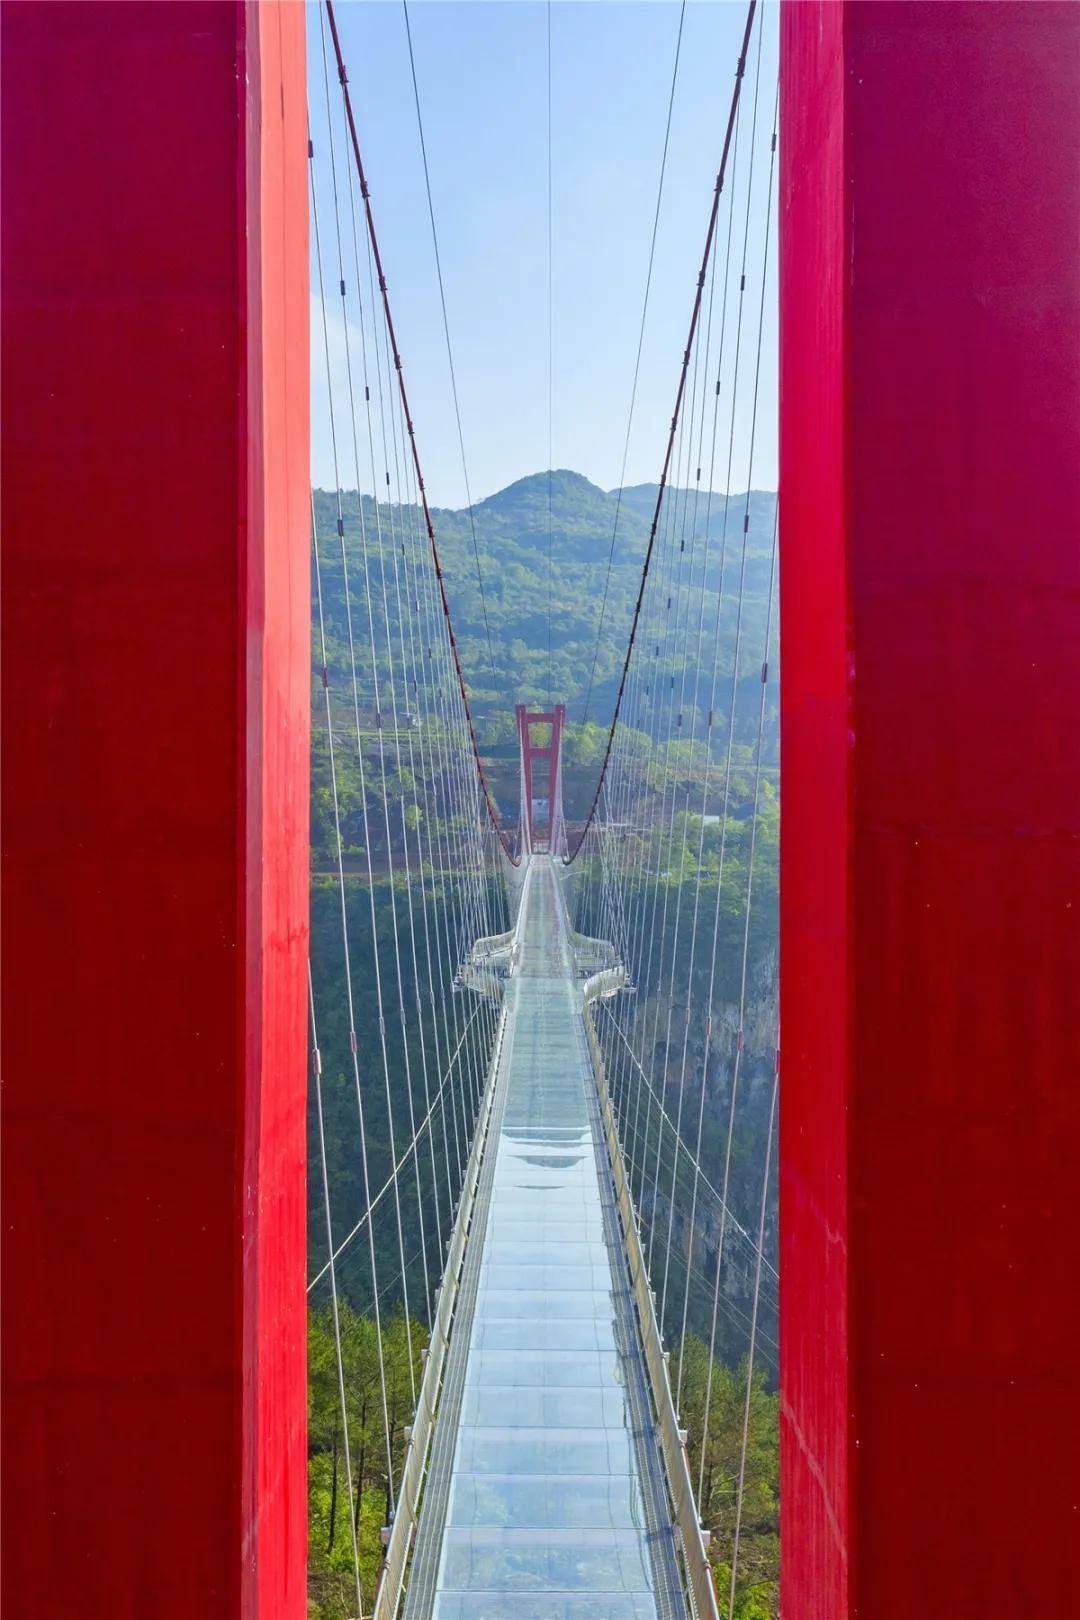 自贡玫瑰海玻璃桥图片